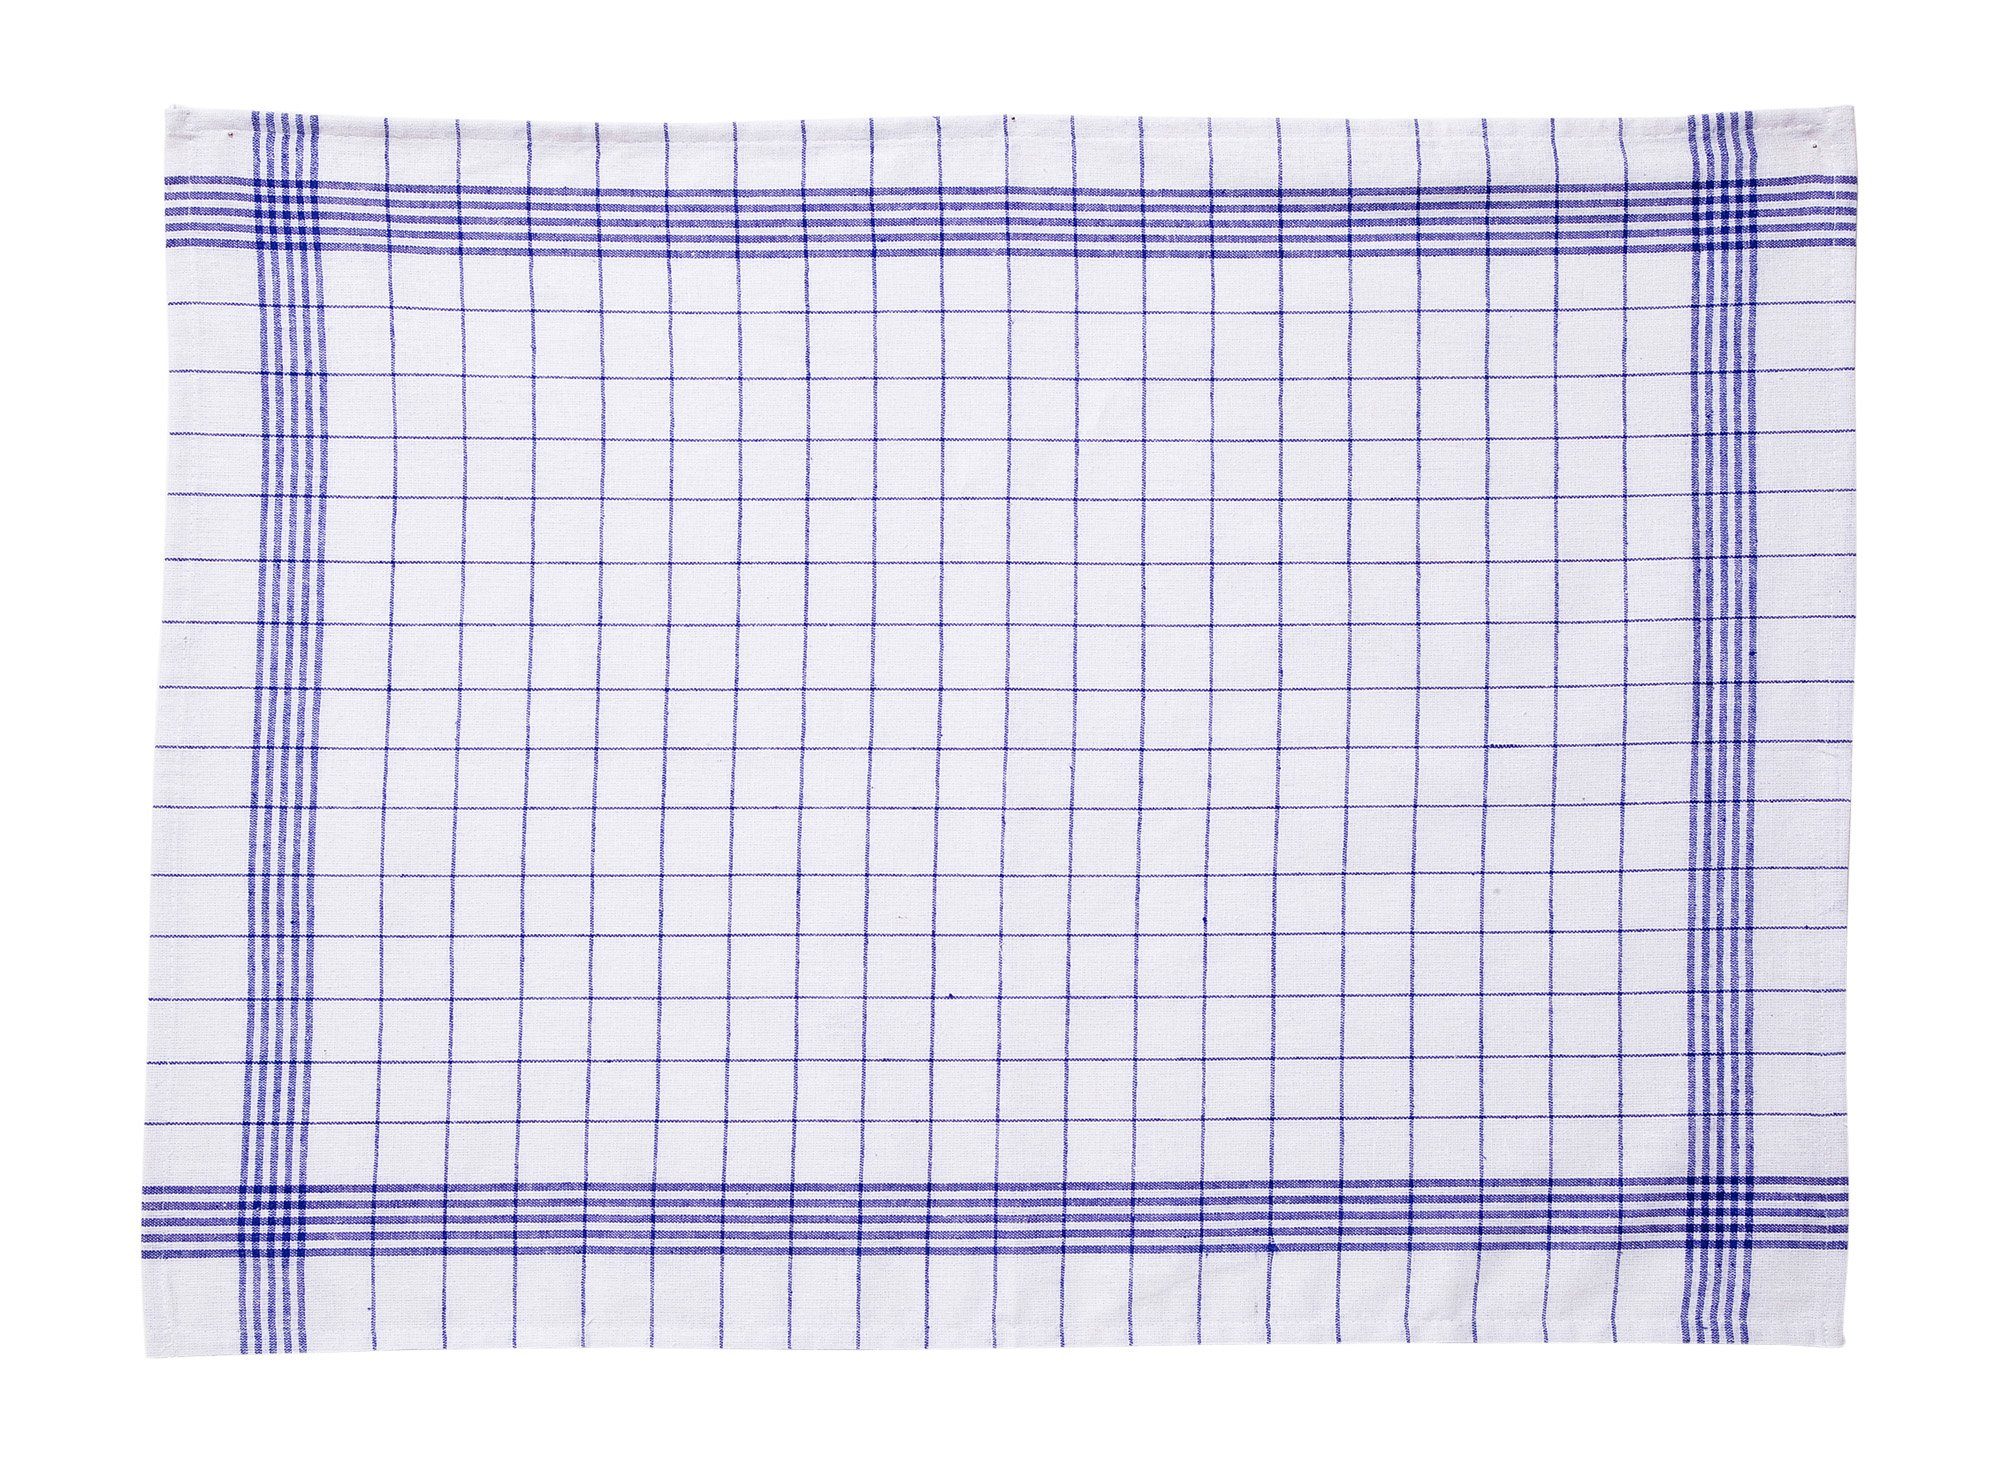 Hometex Premium Textiles Geschirrtuch Trockentuch, einsetzbares Vielfältig 10er 50x70 Blau/Rot-Weiß Allzweck-Tücher aus Premium-Qualität kariert Set 100% cm Baumwolle, 